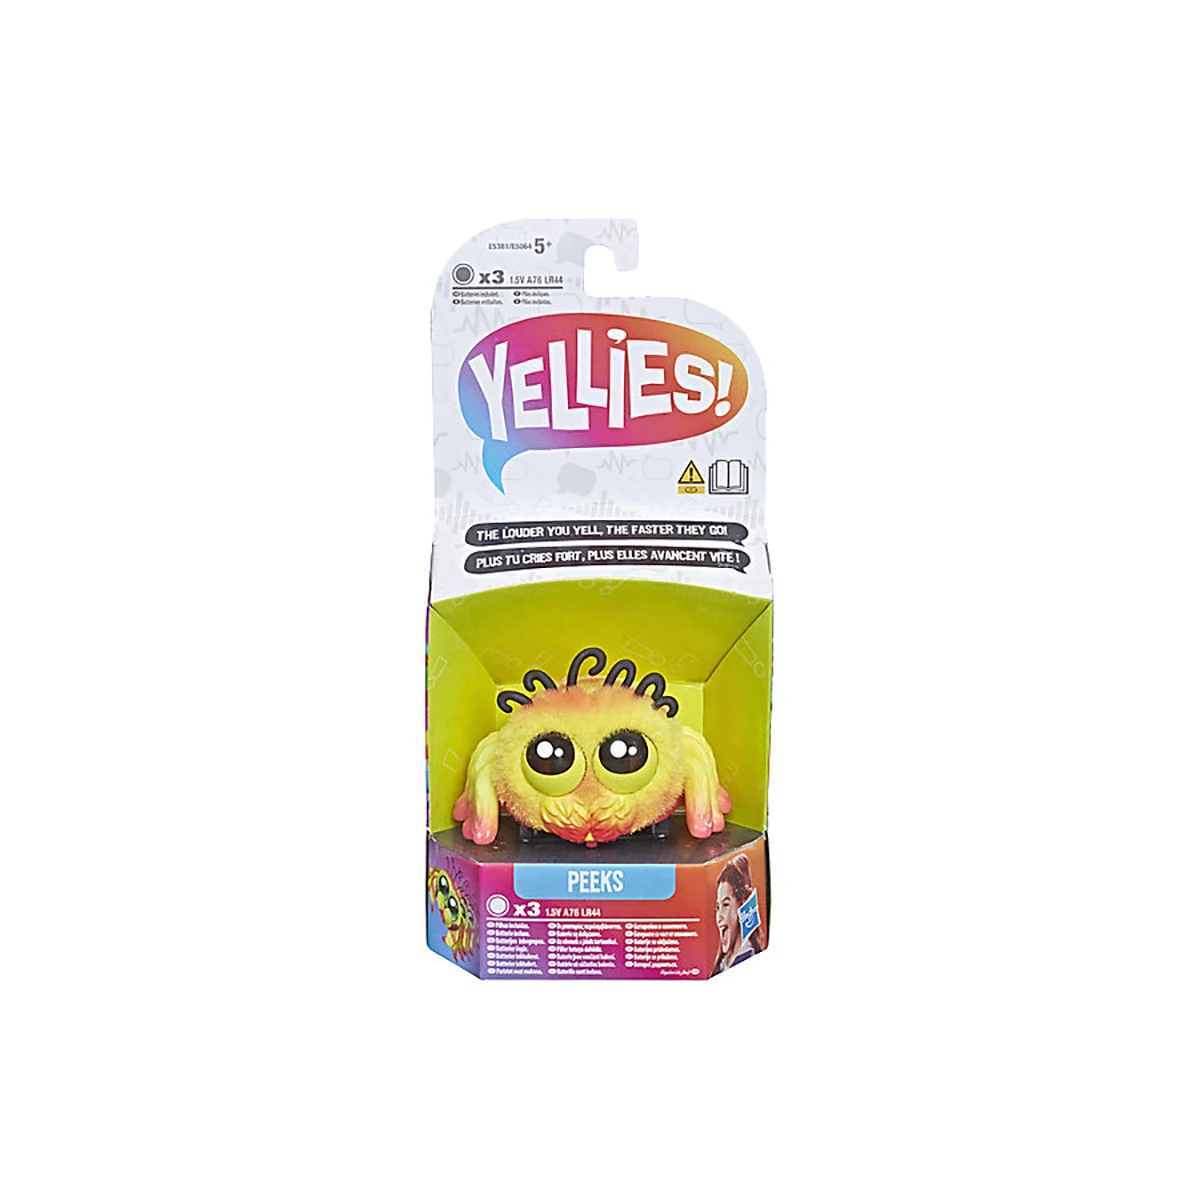 Интерактивная игрушка Hasbro "Yellies" Паучок Пикс